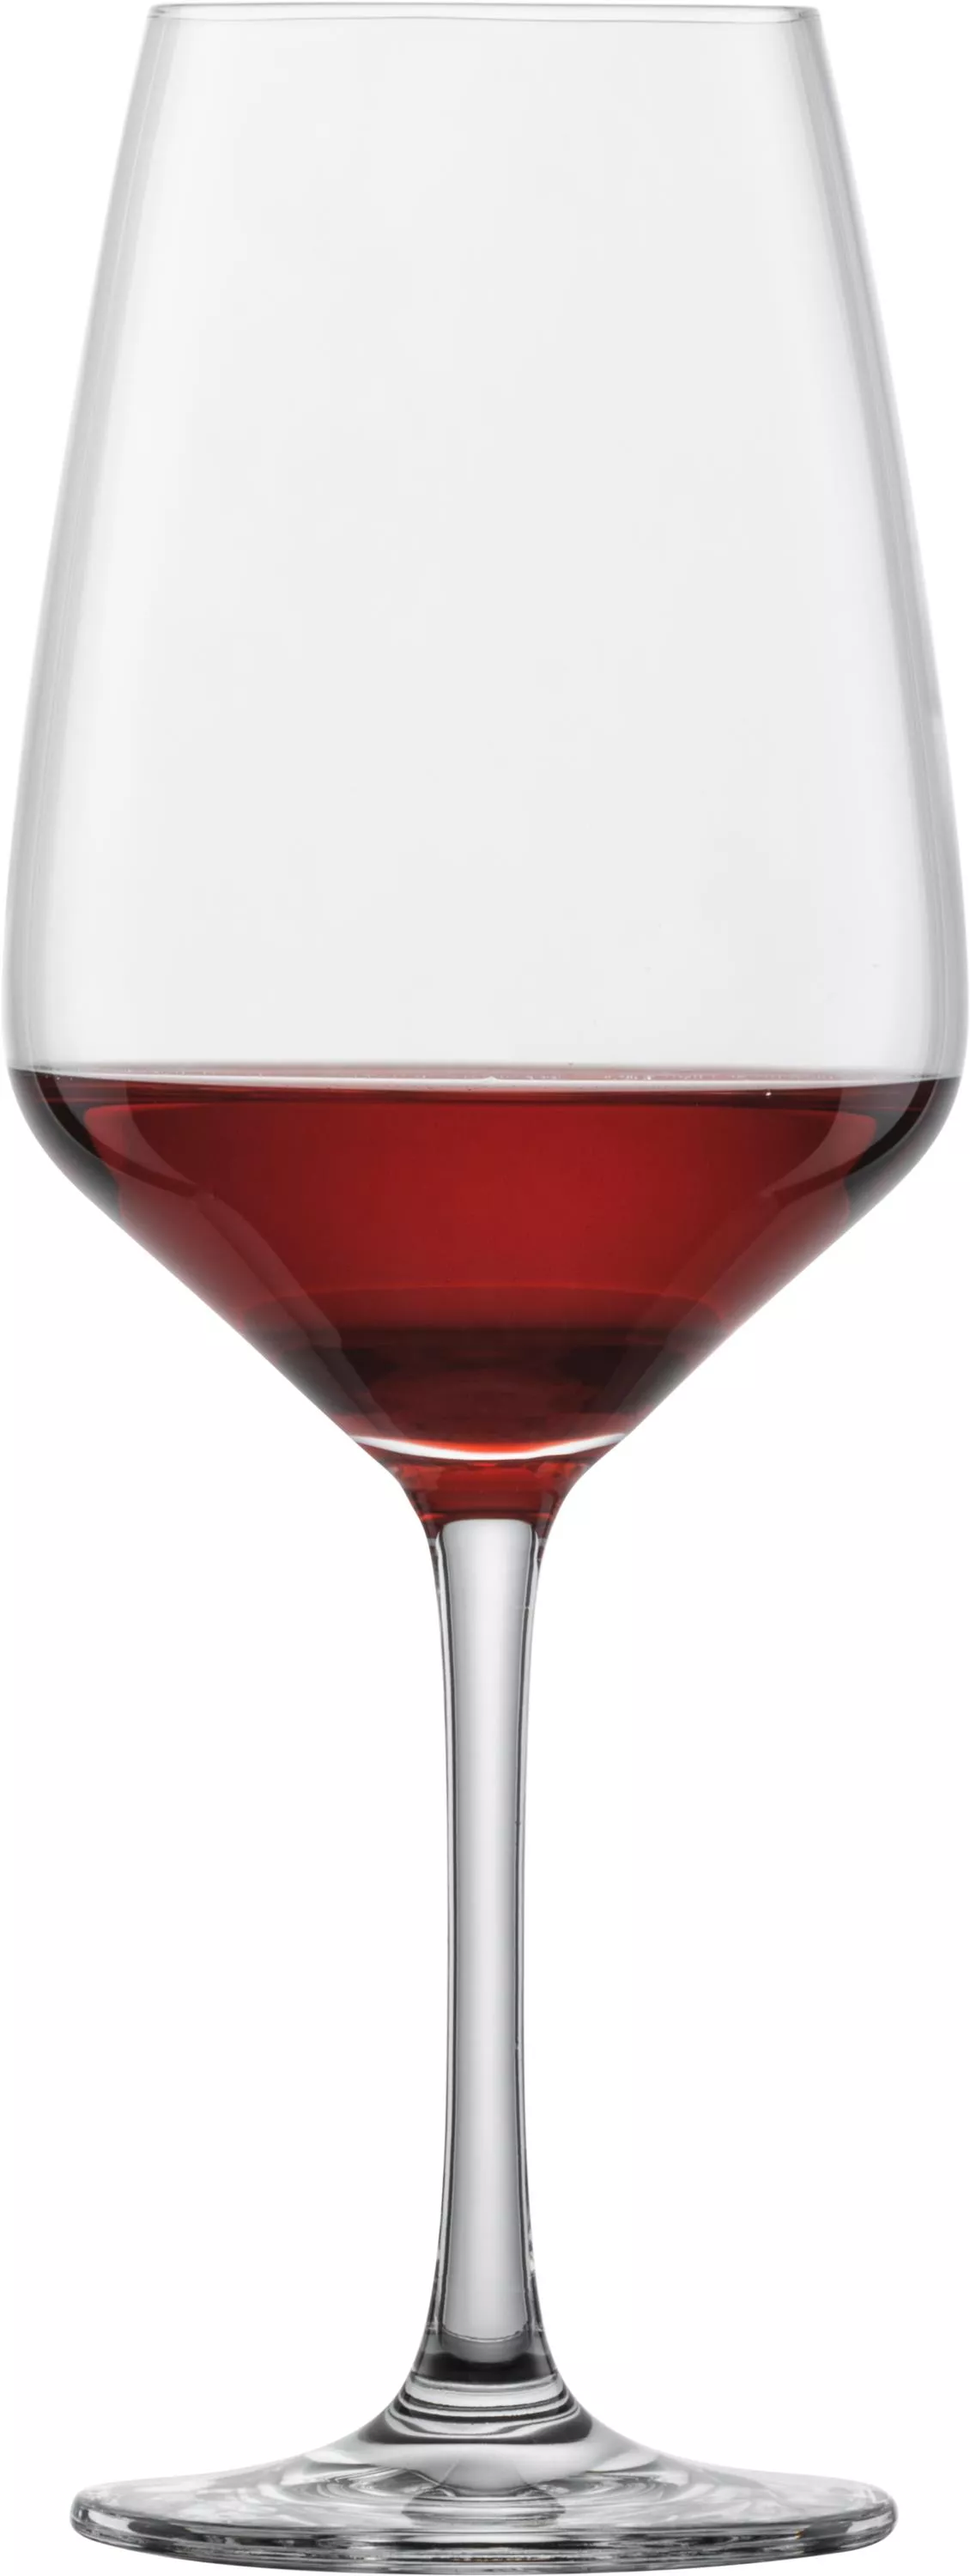 TASTE Rotweinglas 497 ml